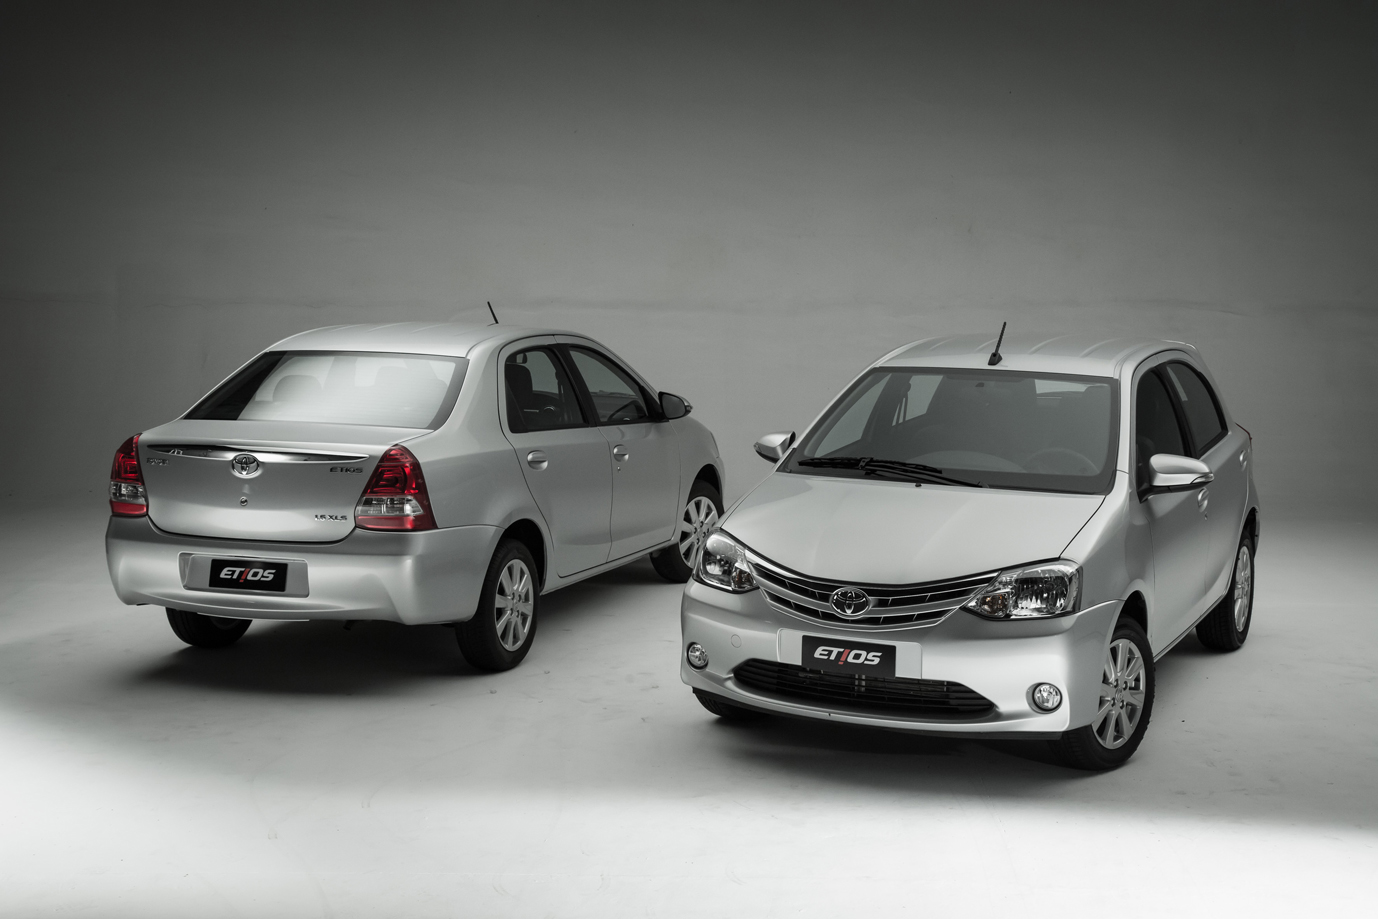 Toyota, Toyota Etios Facelift: Toyota Etios Facelift Diluncurkan Dengan Ubahan Fokus Pada Interior